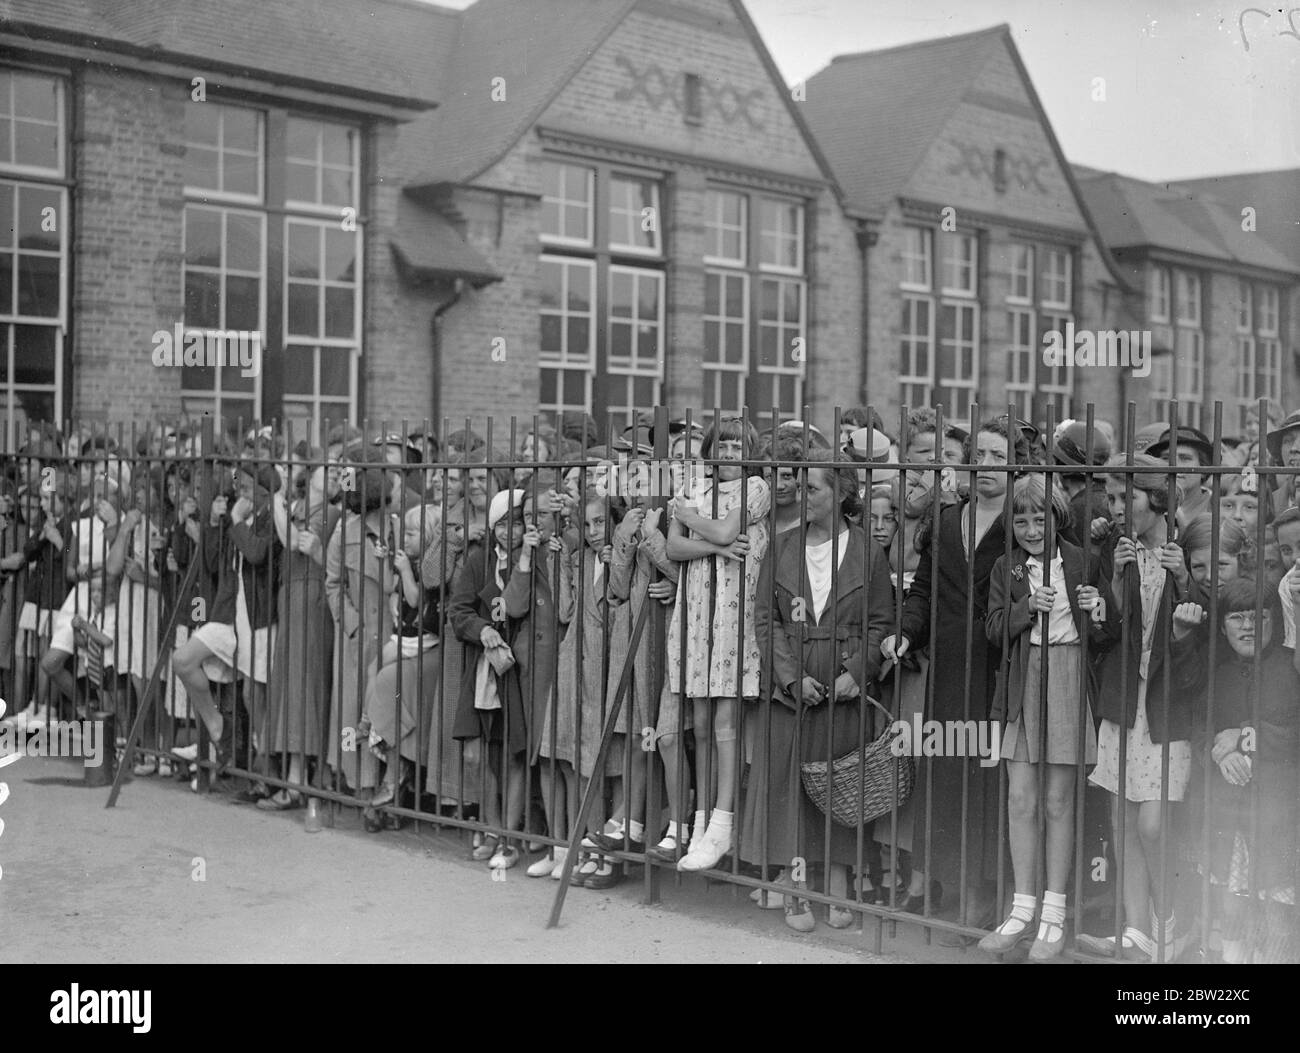 Hunderte von Schulkindern streiken in Romford, Essex, als Protest von 350 Eltern gegen die Erziehungsbehörden des Essex County, die forderten, dass die Kinder in eine neue Schule in der Whale-Bone Lane, Chadwell Heath, gehen sollten. Kinder hinter dem Geländer auf dem Spielplatz der alten Schule in der London Road. Bis 30. August 1937 Stockfoto